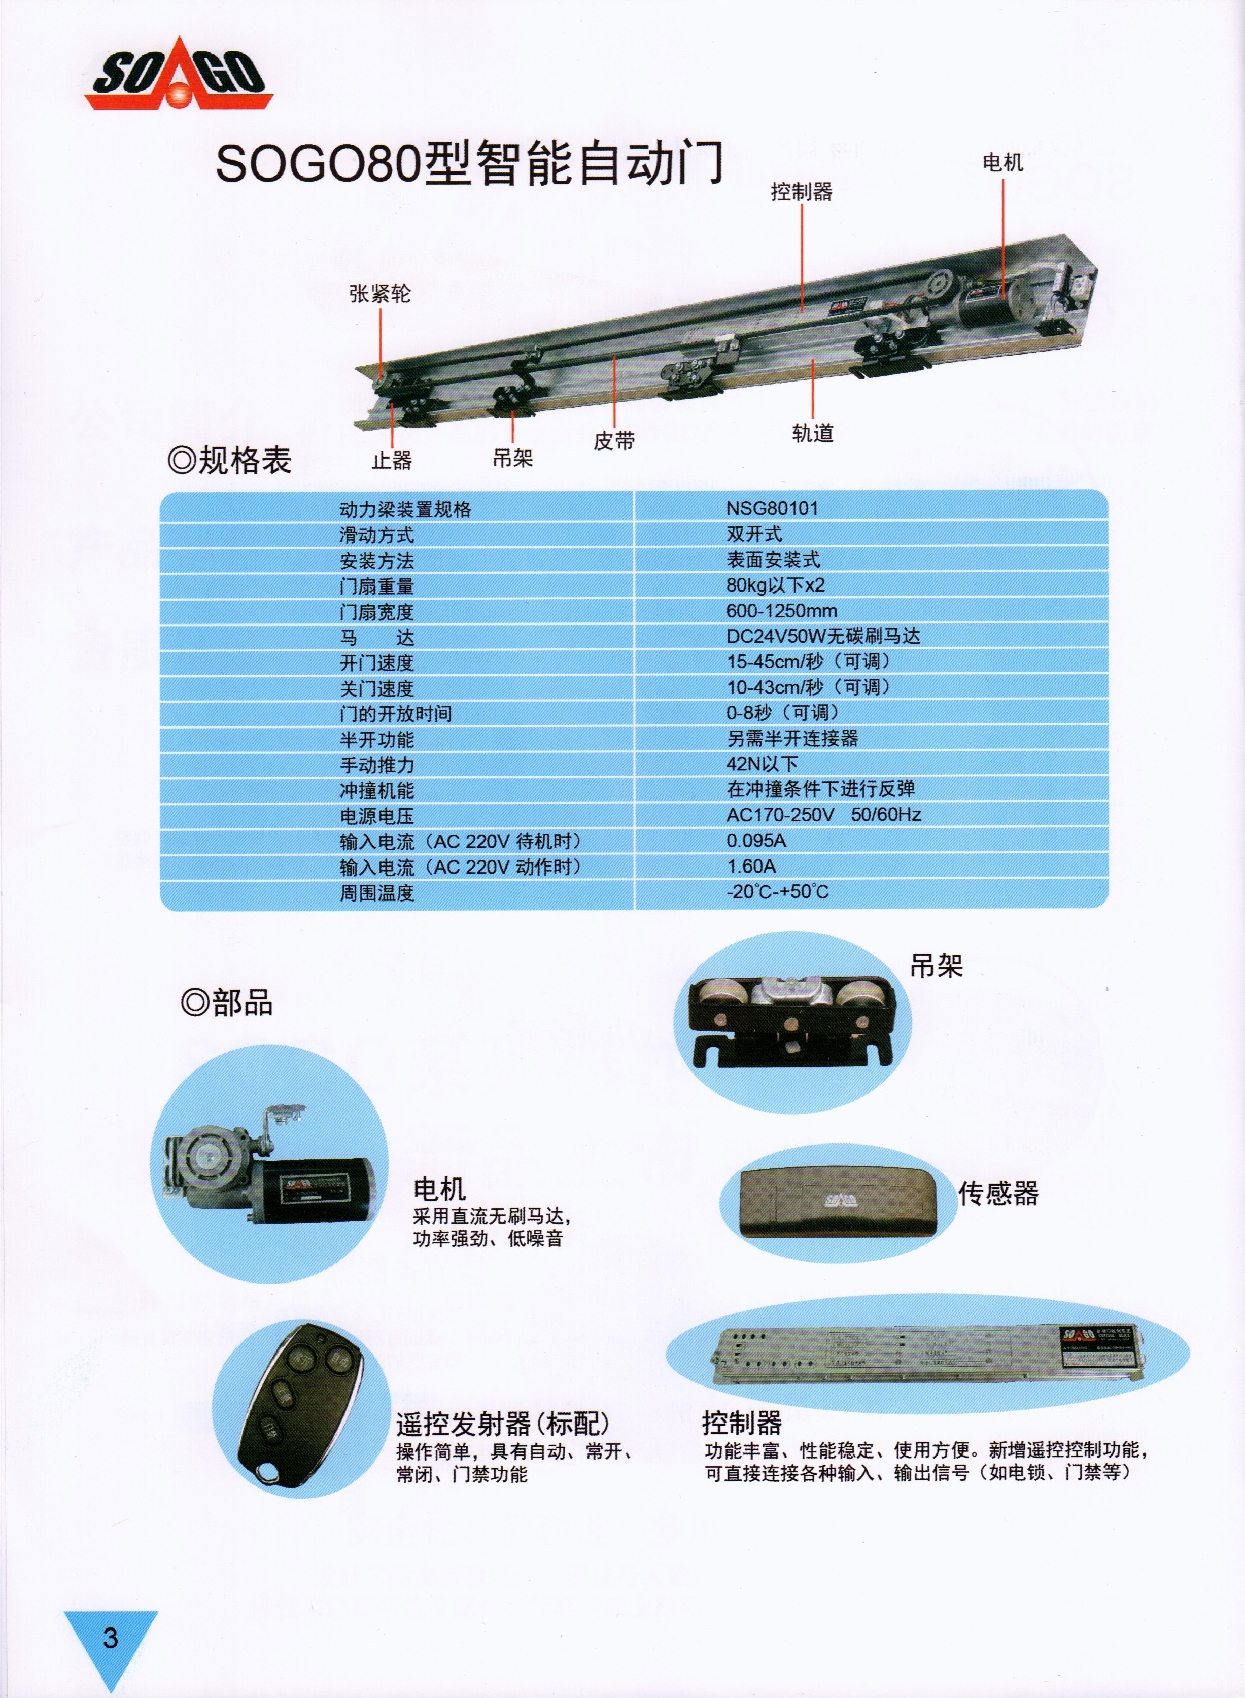 SOGO-80型平移门控制系统(图5)